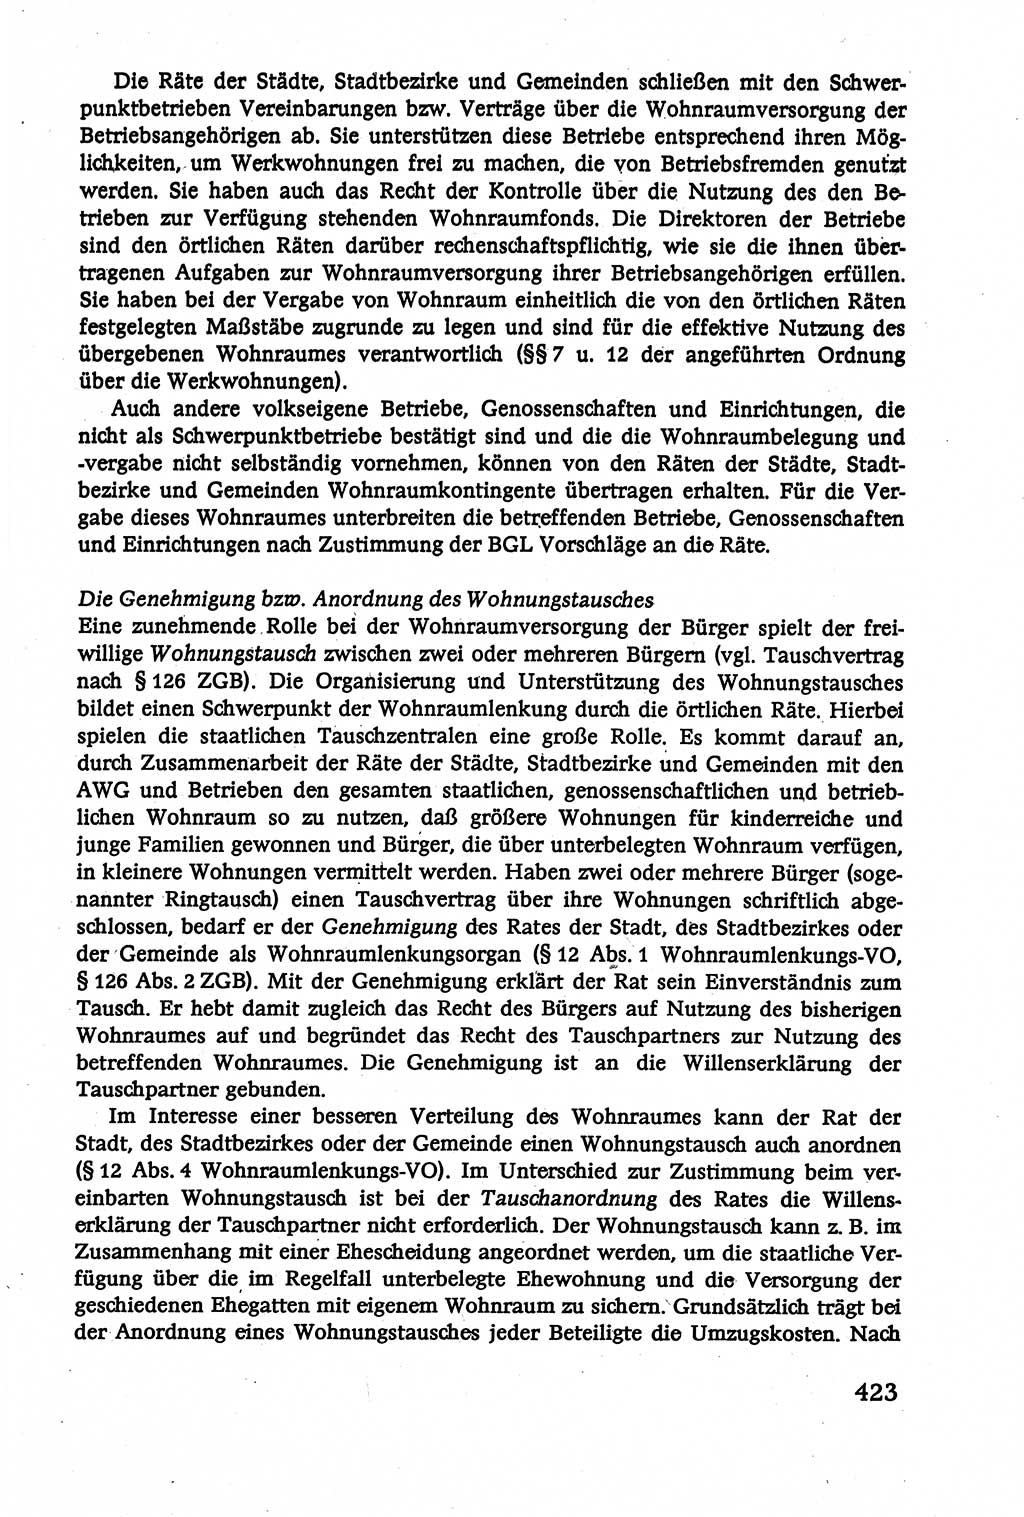 Verwaltungsrecht [Deutsche Demokratische Republik (DDR)], Lehrbuch 1979, Seite 423 (Verw.-R. DDR Lb. 1979, S. 423)